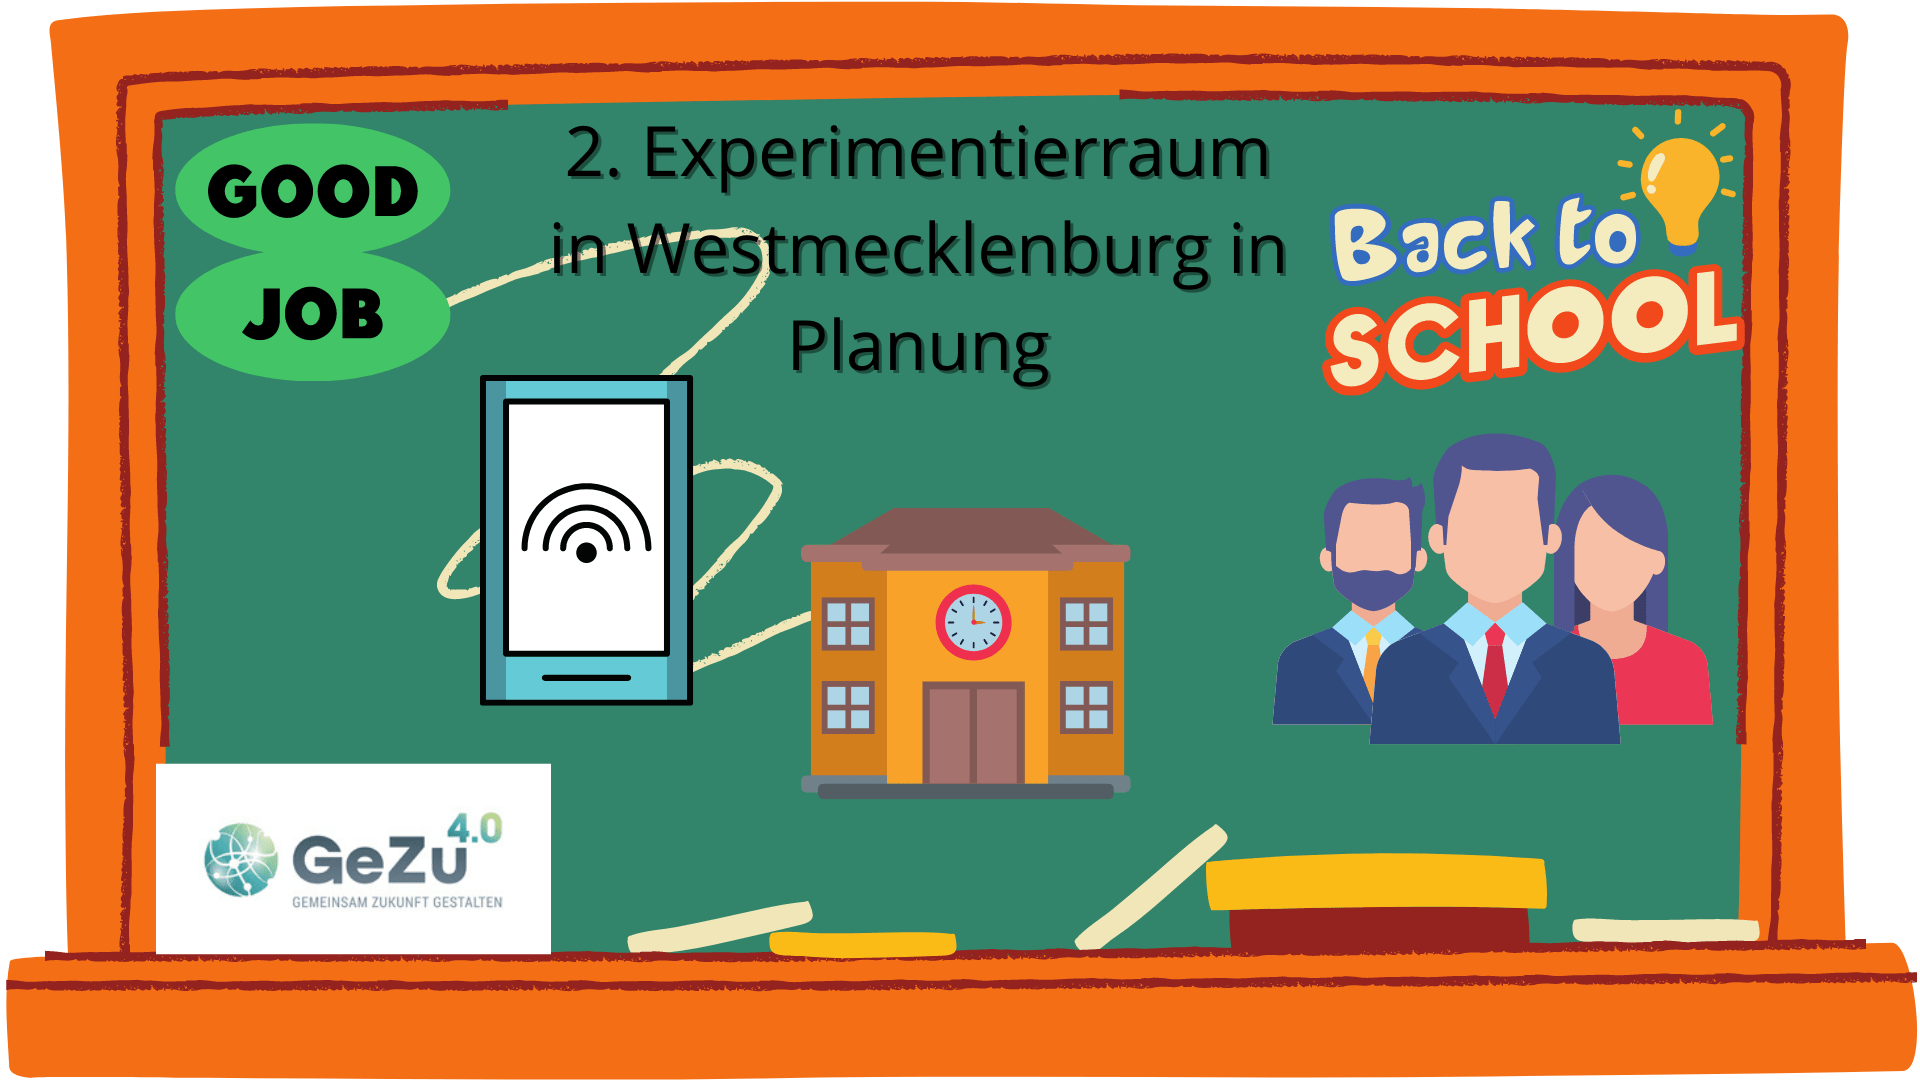 2. Lern- und Experimentierraum in Westmecklenburg in Planung